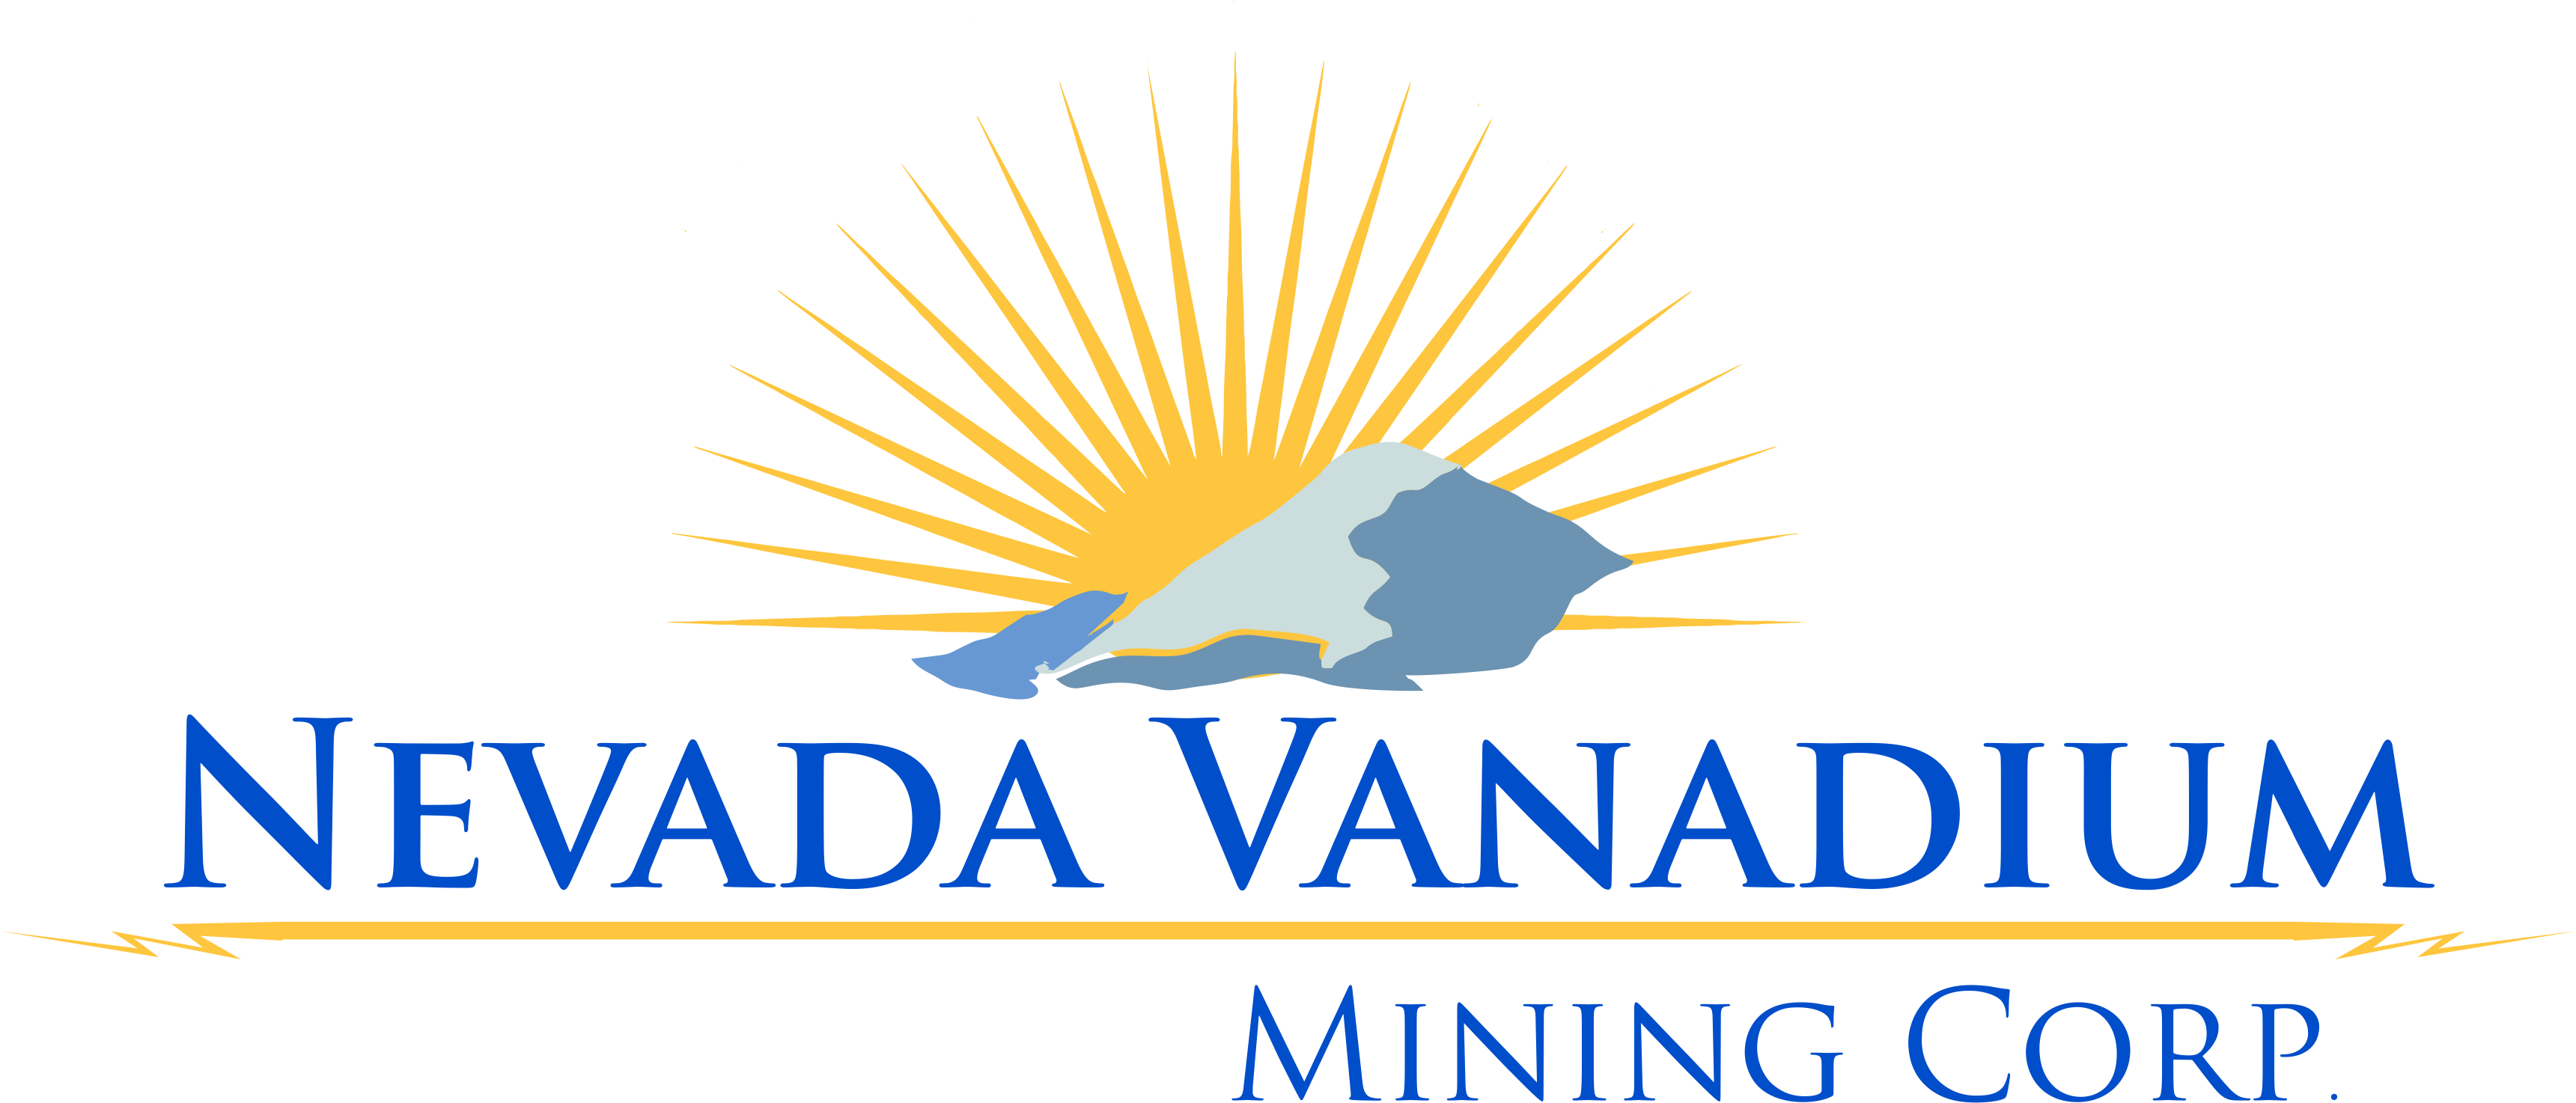 Nevada Vanadium